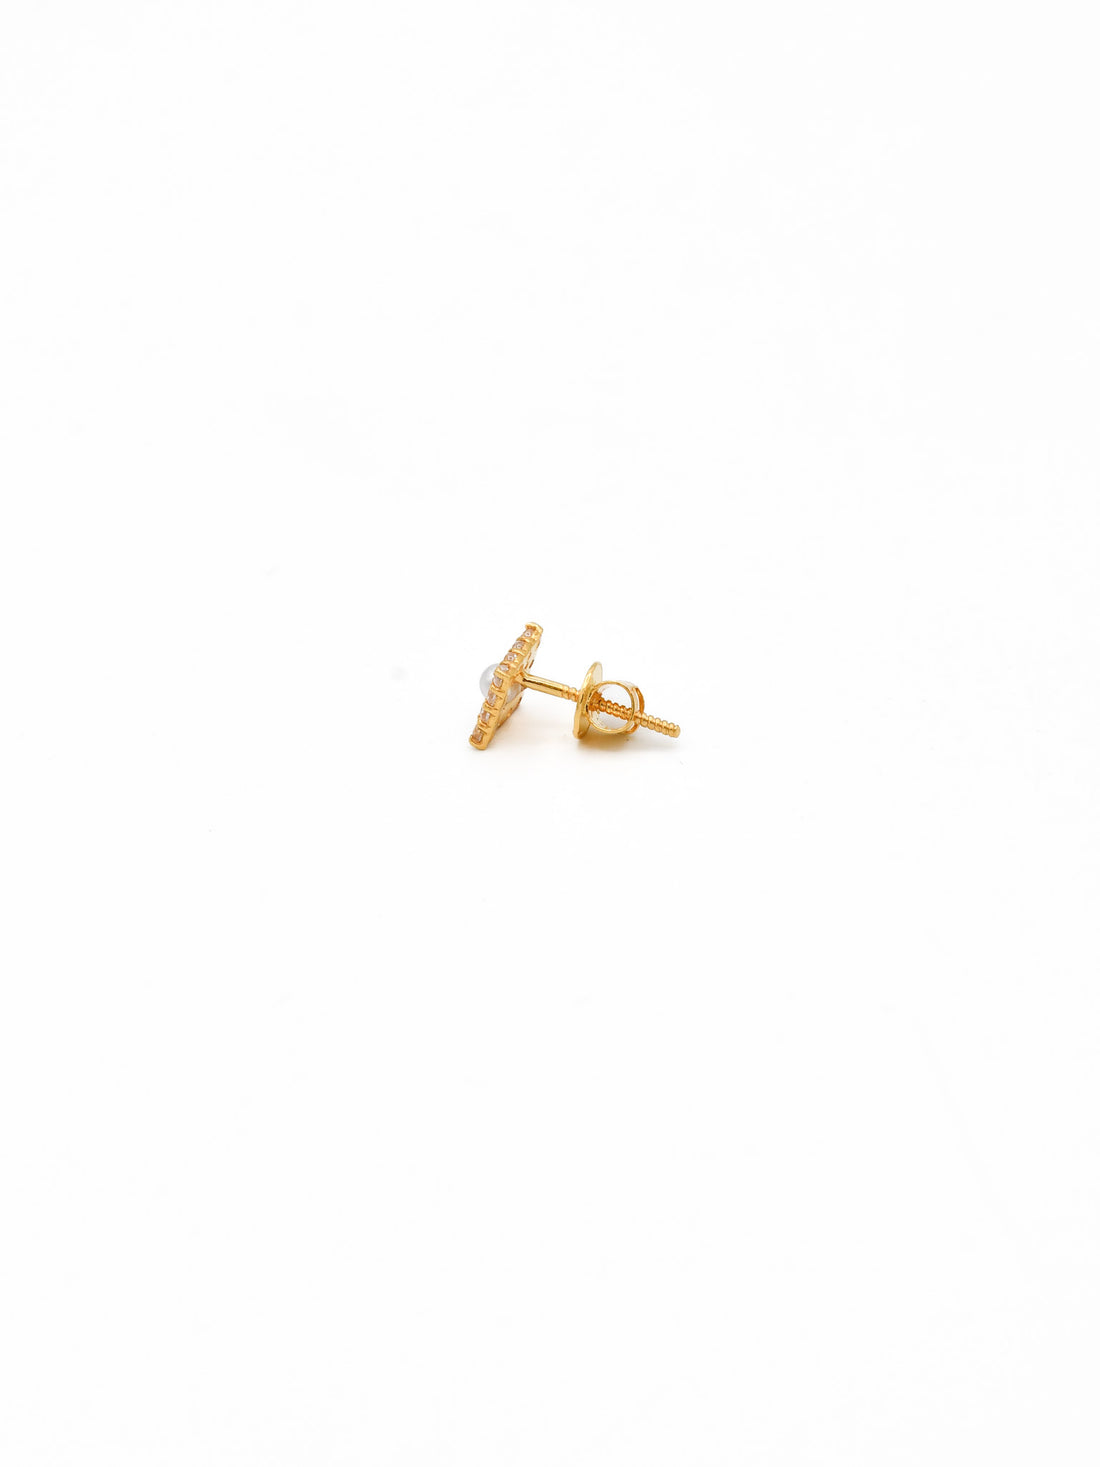 22ct Gold CZ Pearl Stud Earrings - Roop Darshan